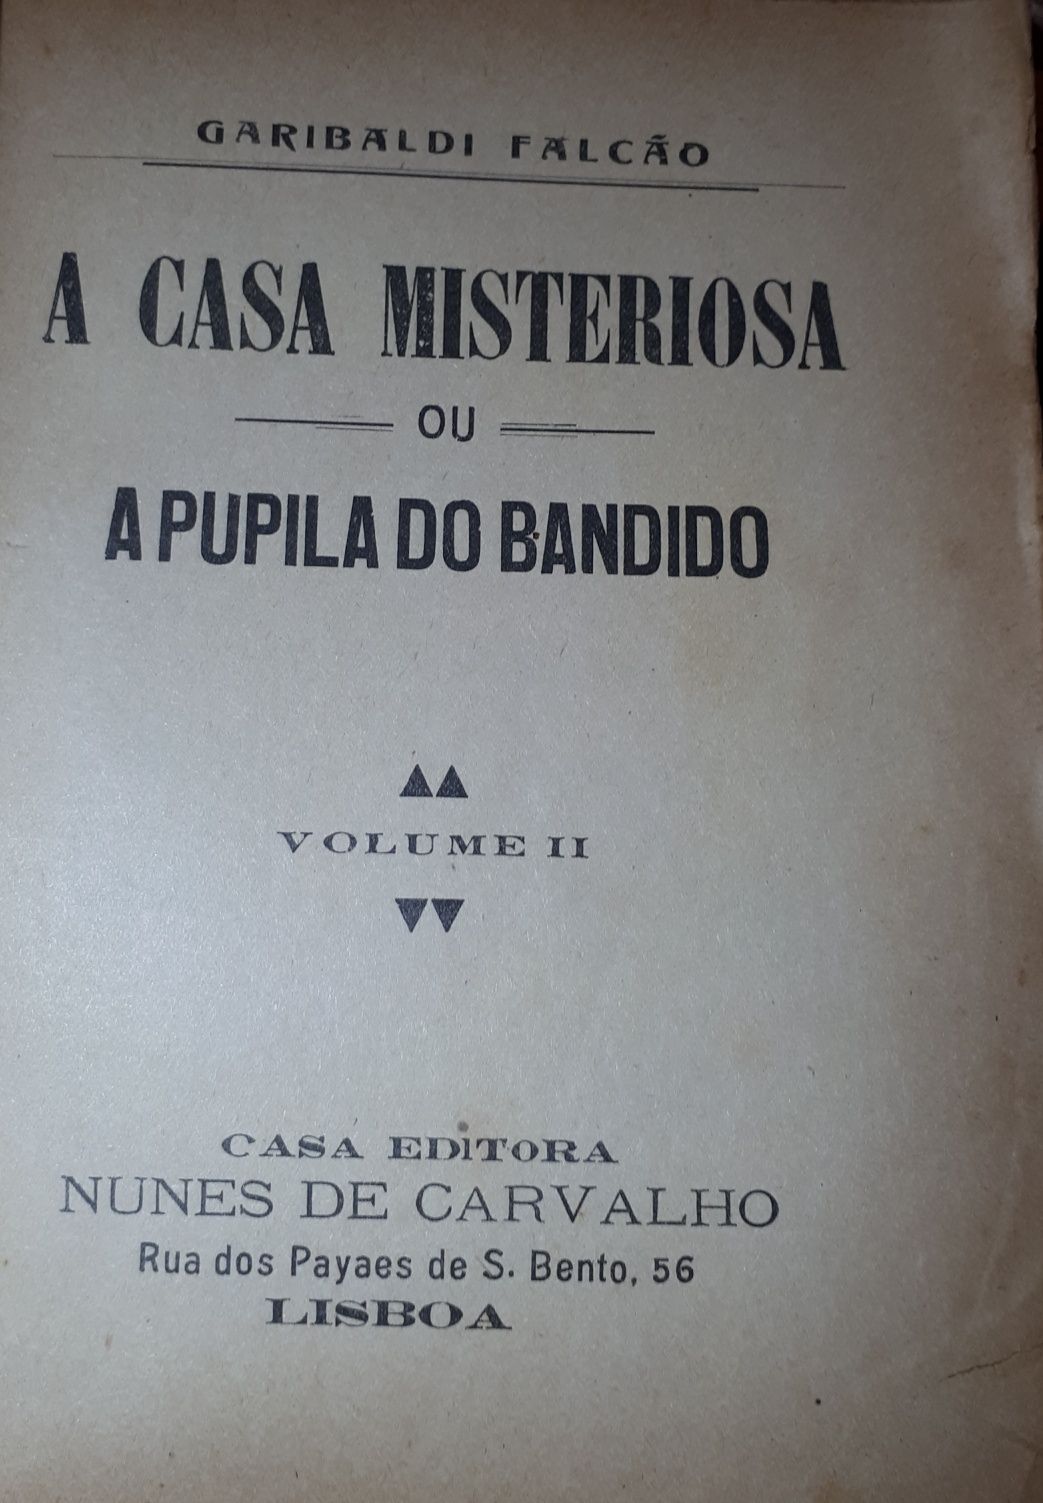 A casa misteriosa ou a Pupila do Bandido por Garibaldi Falcão 4 vol